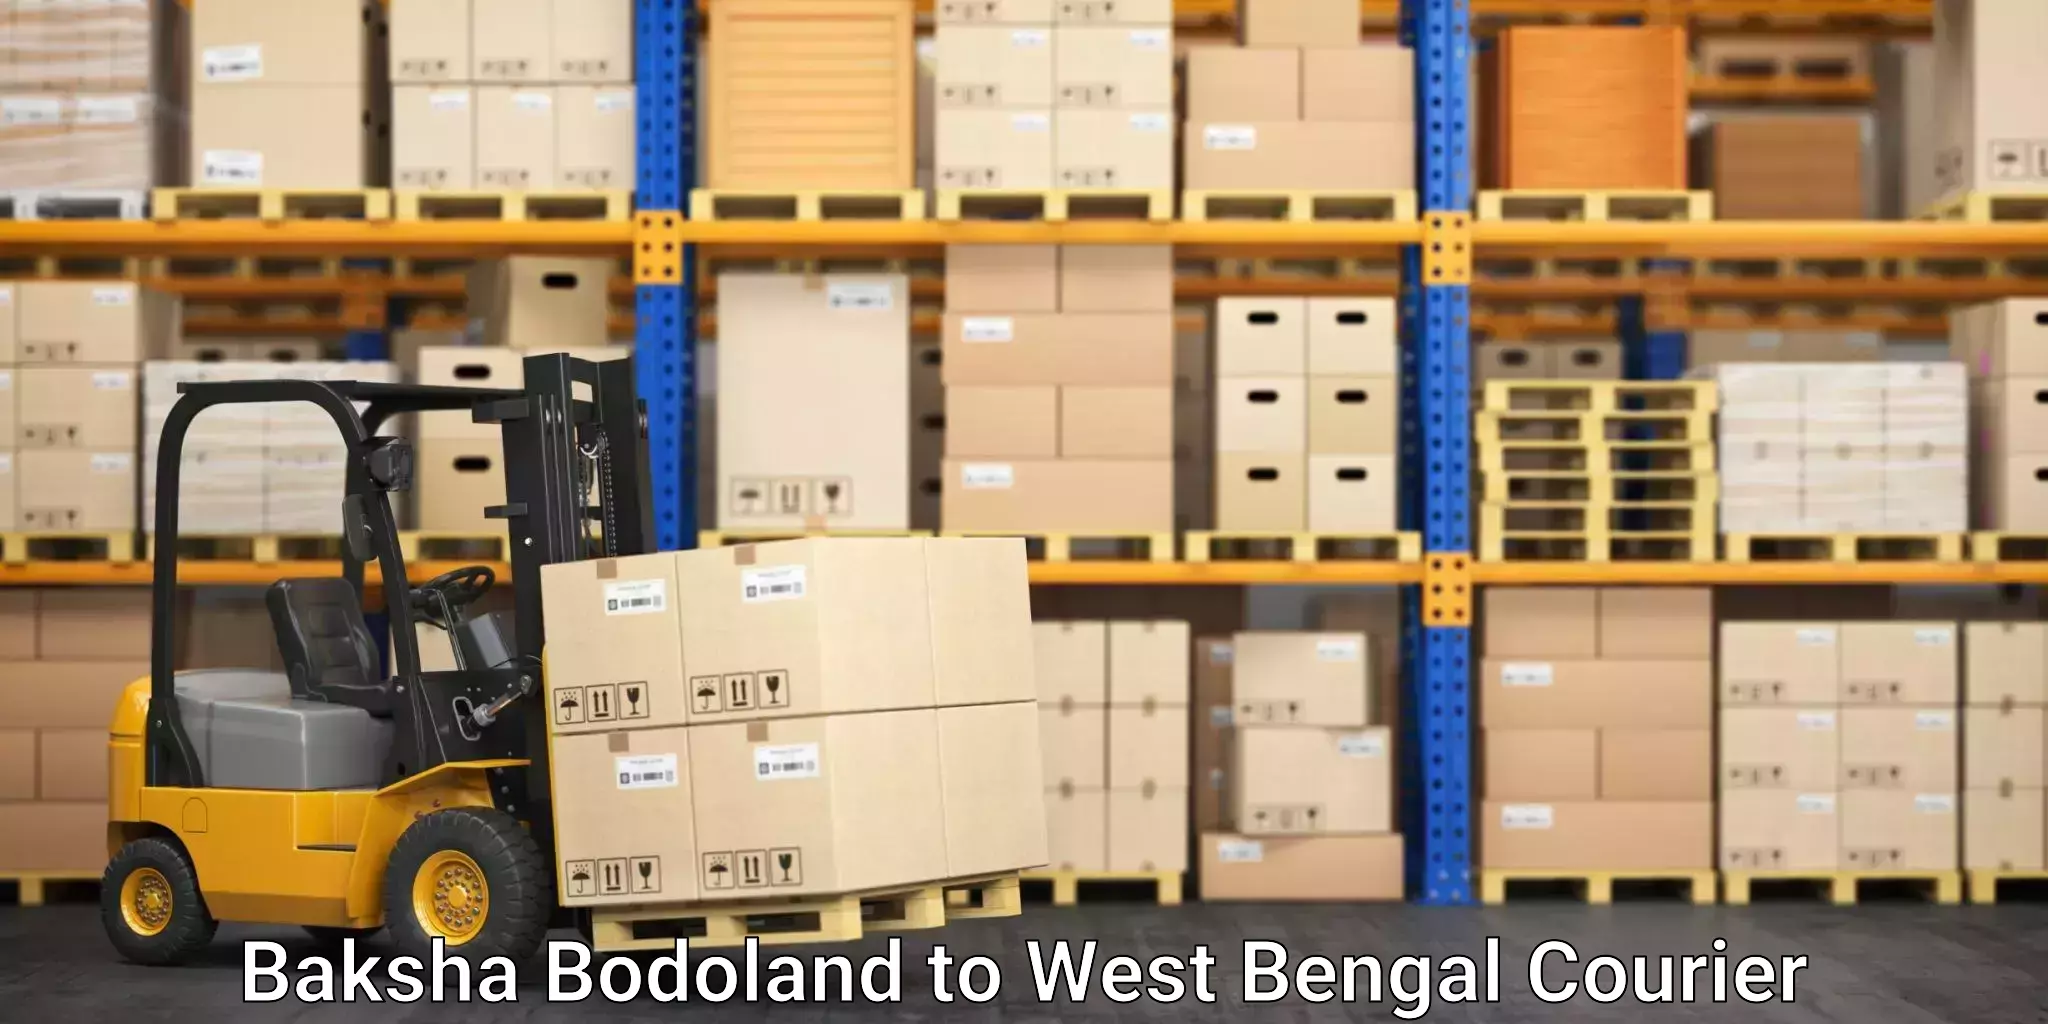 Reliable courier service Baksha Bodoland to Bally